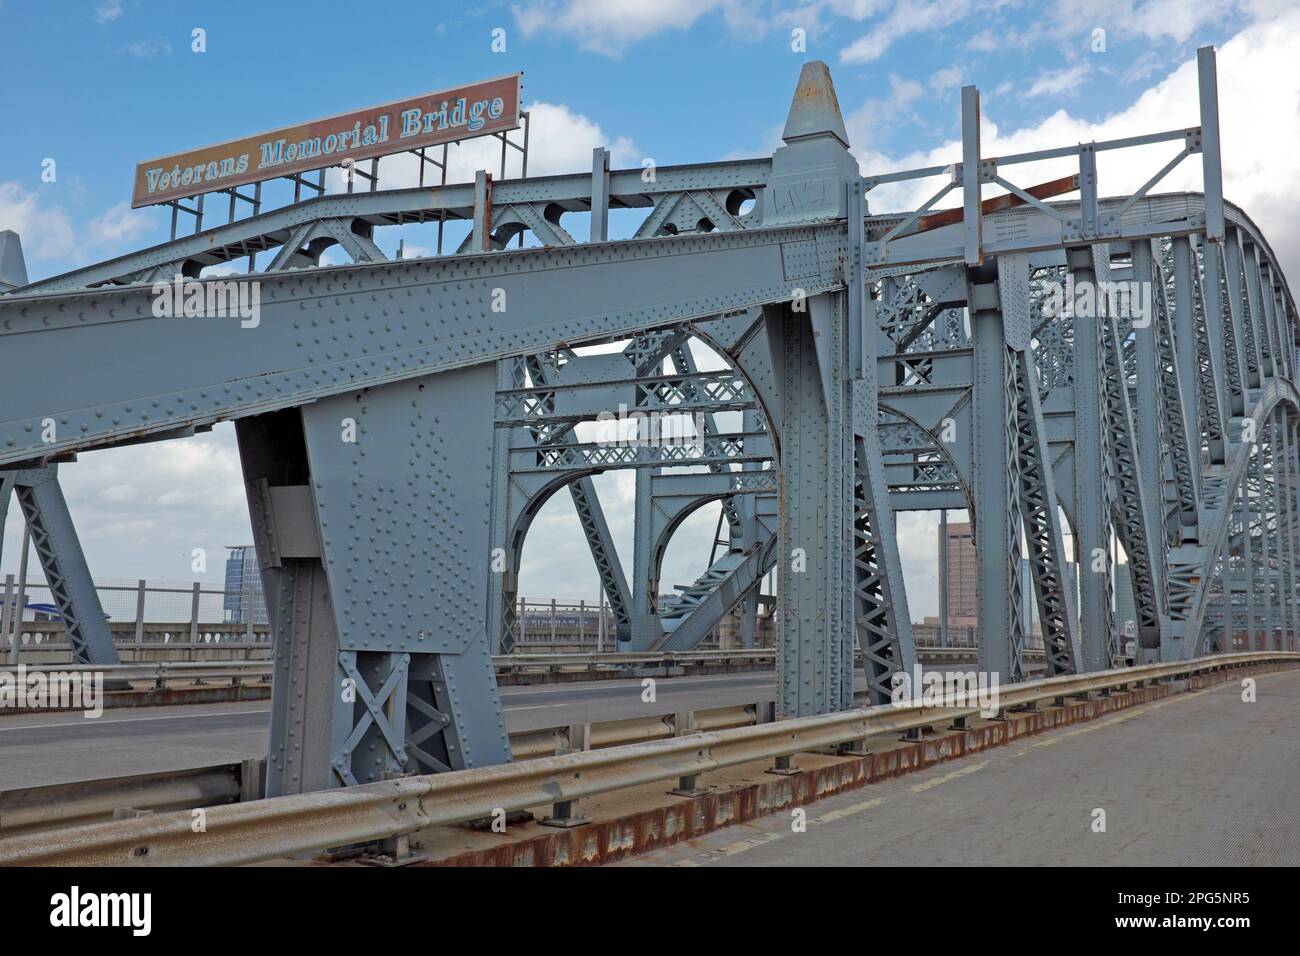 Il Veterans Memorial Bridge, un ponte sospeso ad arco ad alta compressione a Cleveland, Ohio, USA, conosciuto anche come il Detroit-Superior Bridge. Foto Stock